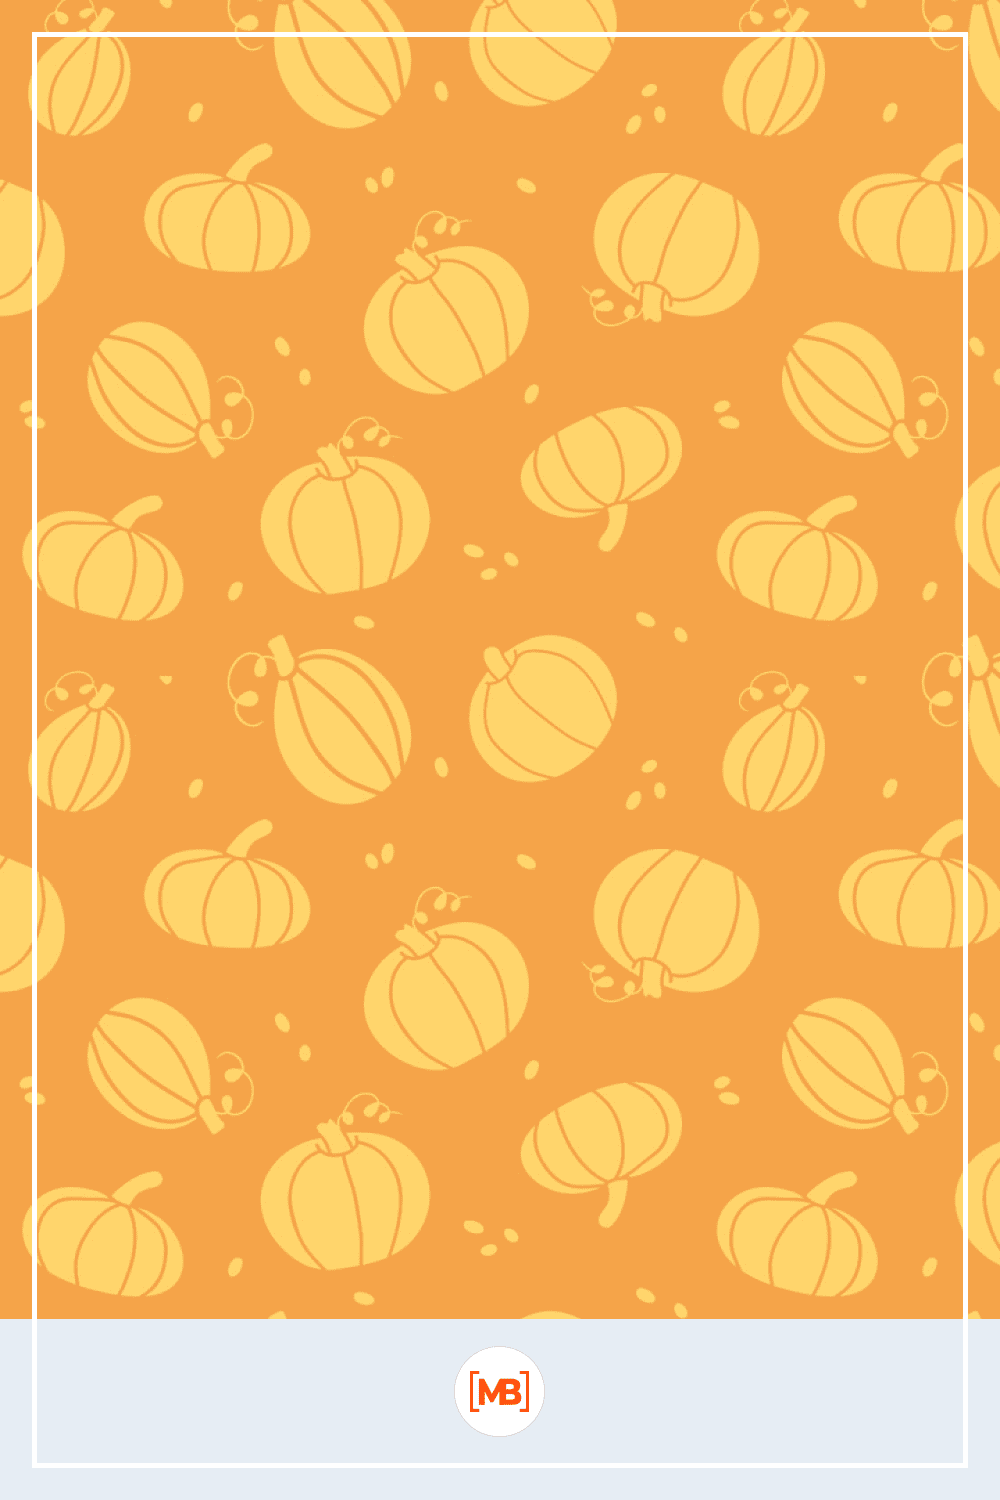 Thanksgiving golden pumpkins seamless pattern vector image.